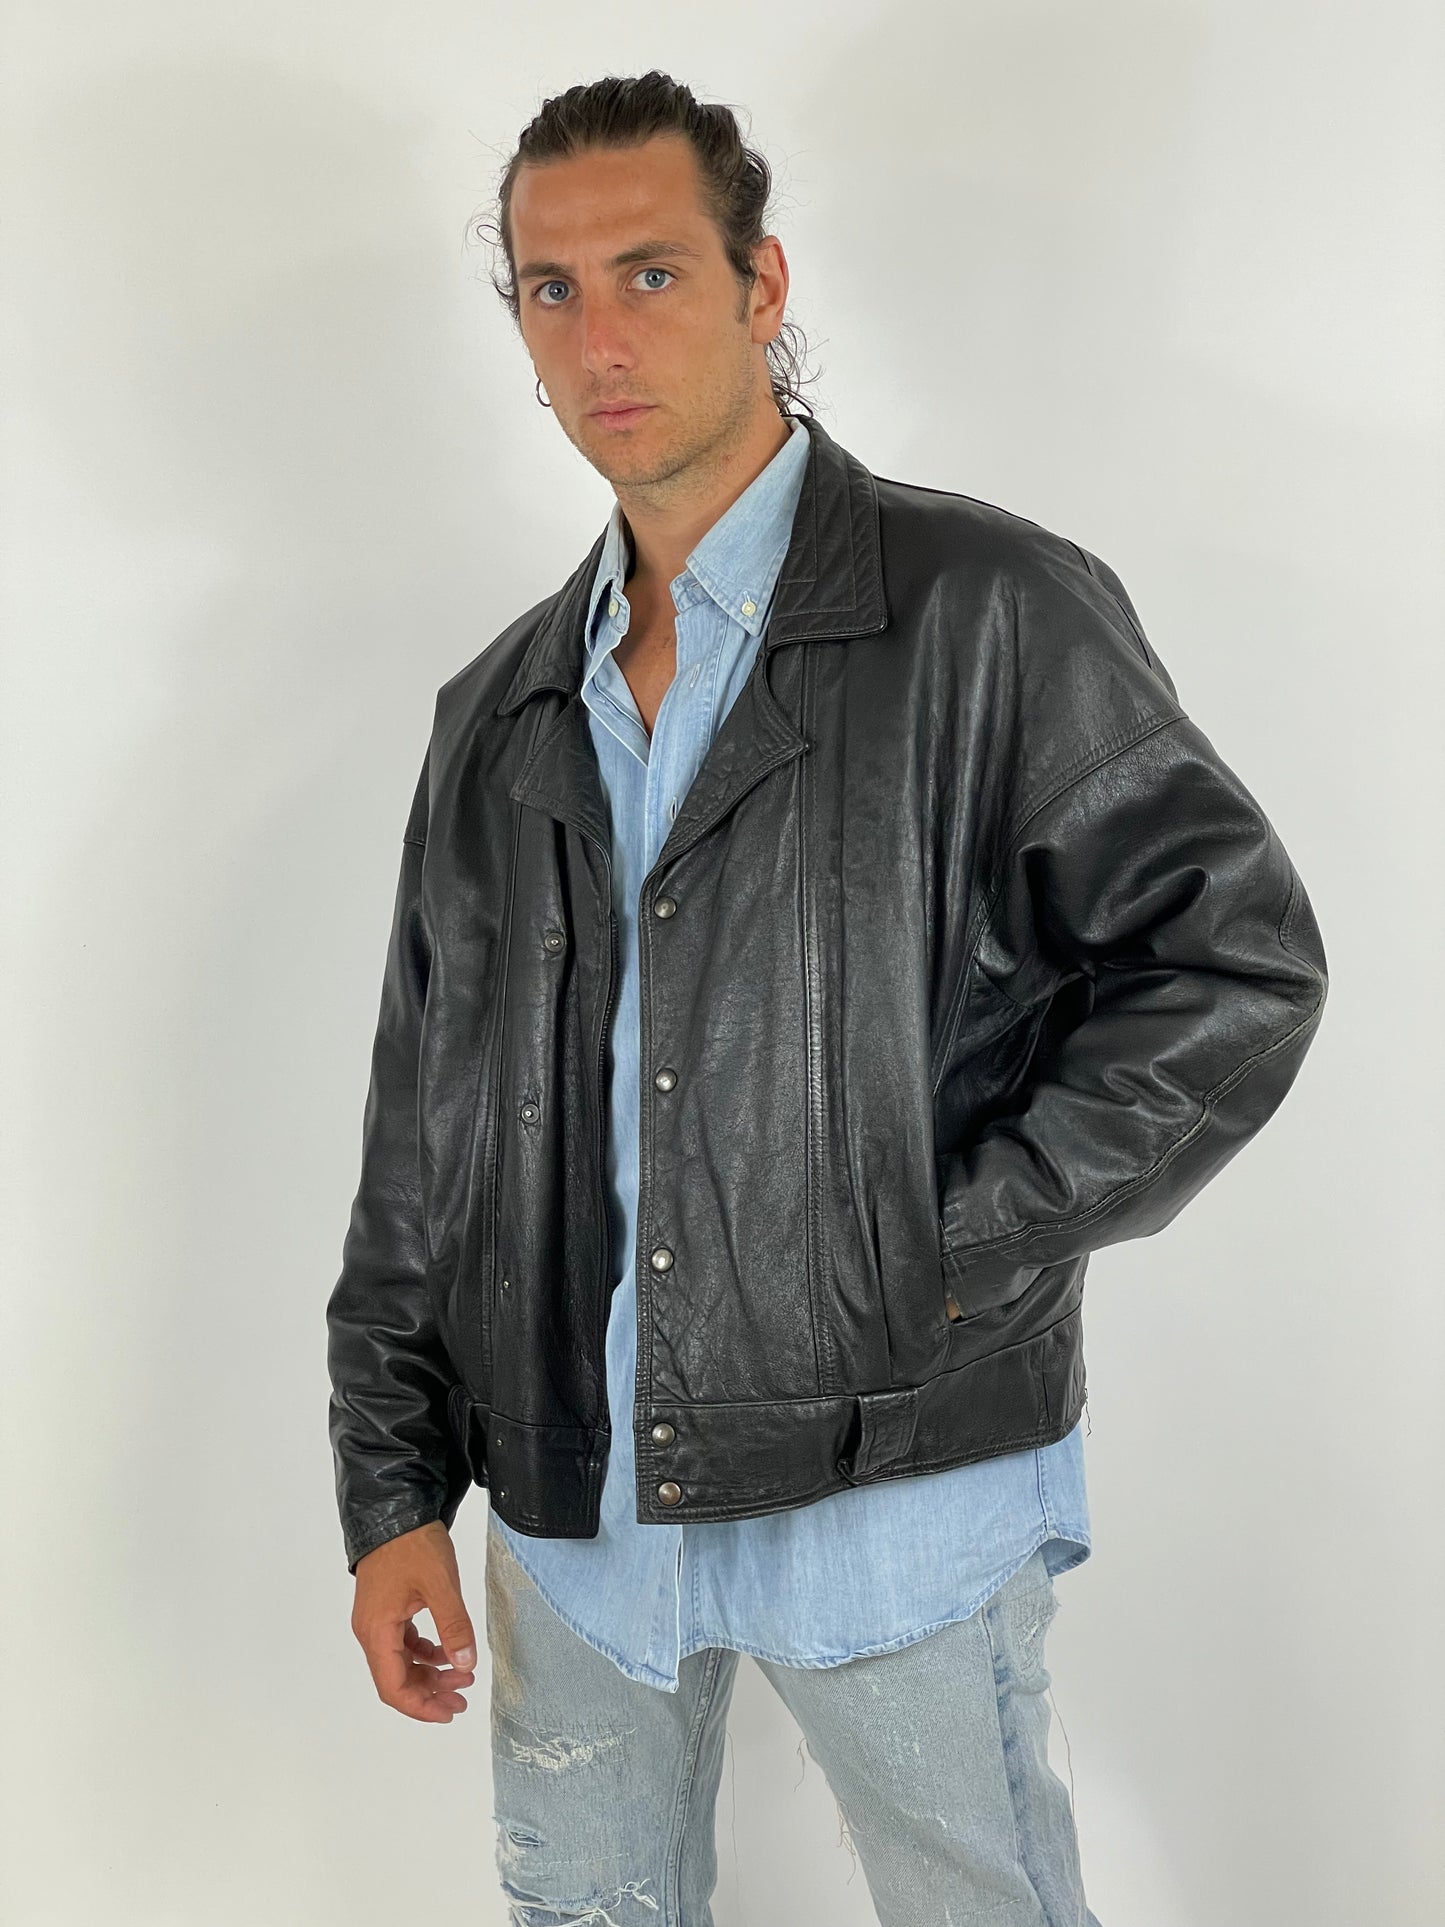 Leather Jacket 1980s